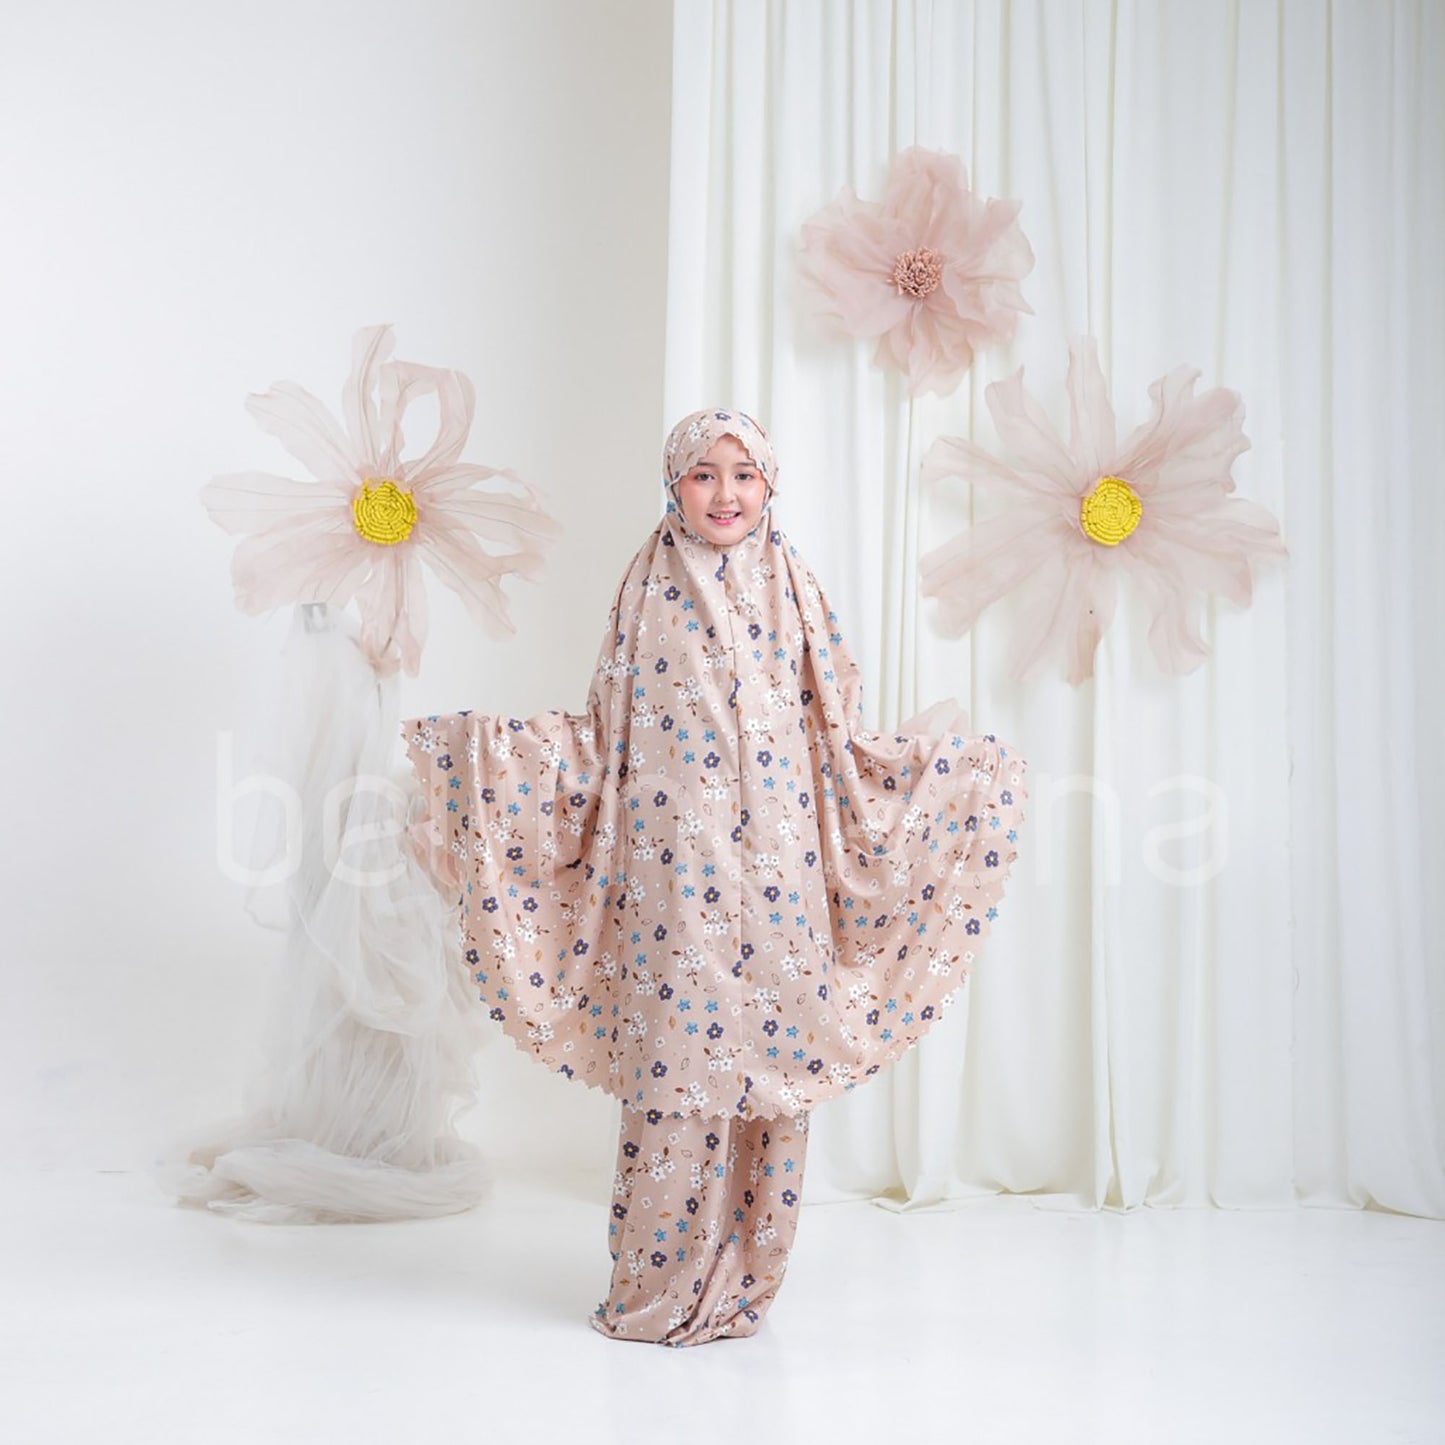 Brielle Laser Cut 2in1 Cotton Children's Mukena Muslim Prayer Dress